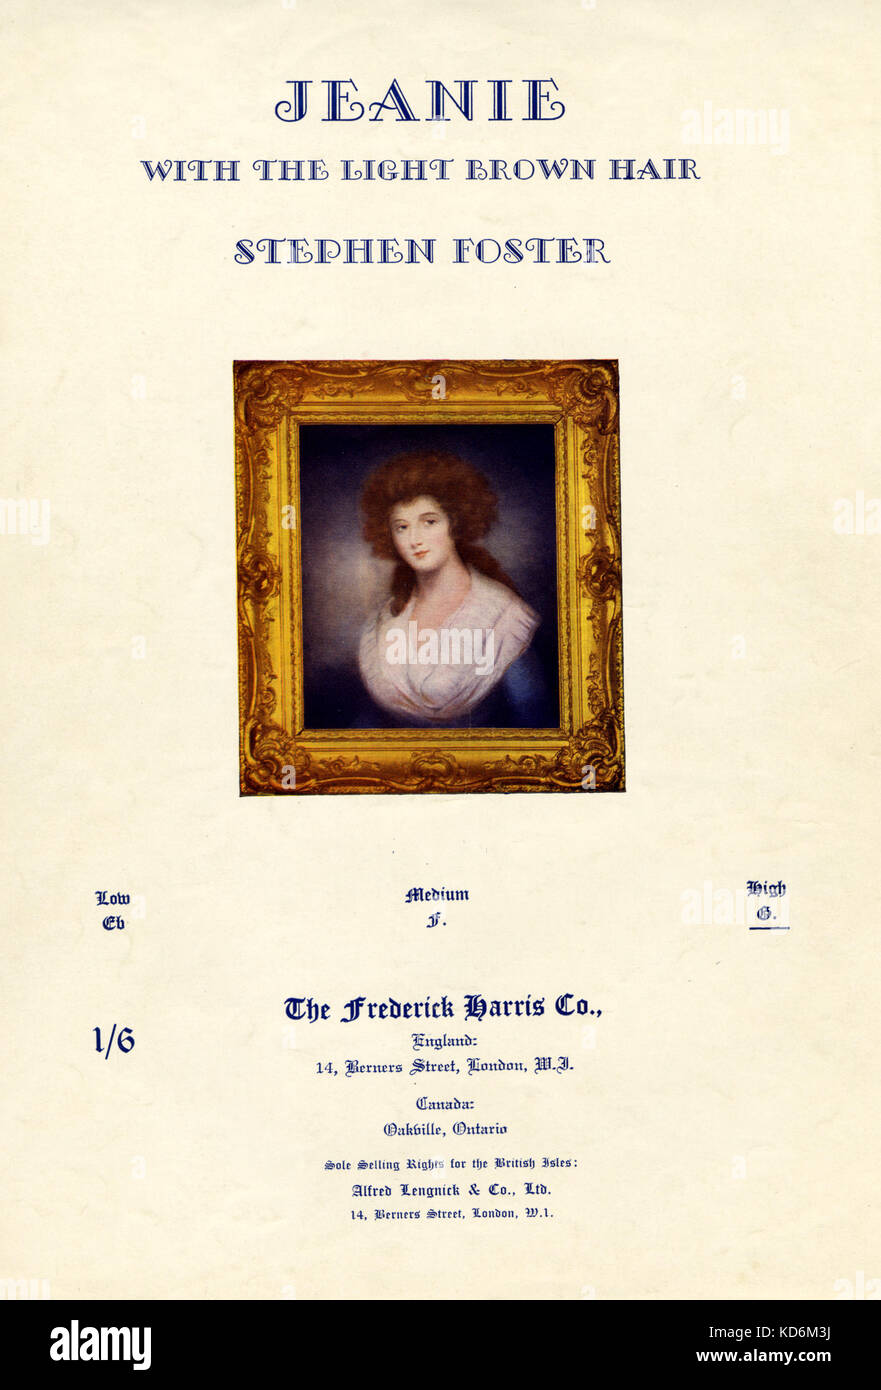 Stephen Foster chanson ' Jeanie avec les cheveux brun clair ' (1854) score (voix et piano). Portrait encadré de femme du 19e siècle. Compositeur, 1826-1864. Publié le 1940 Frederick Harris Co., London. Banque D'Images